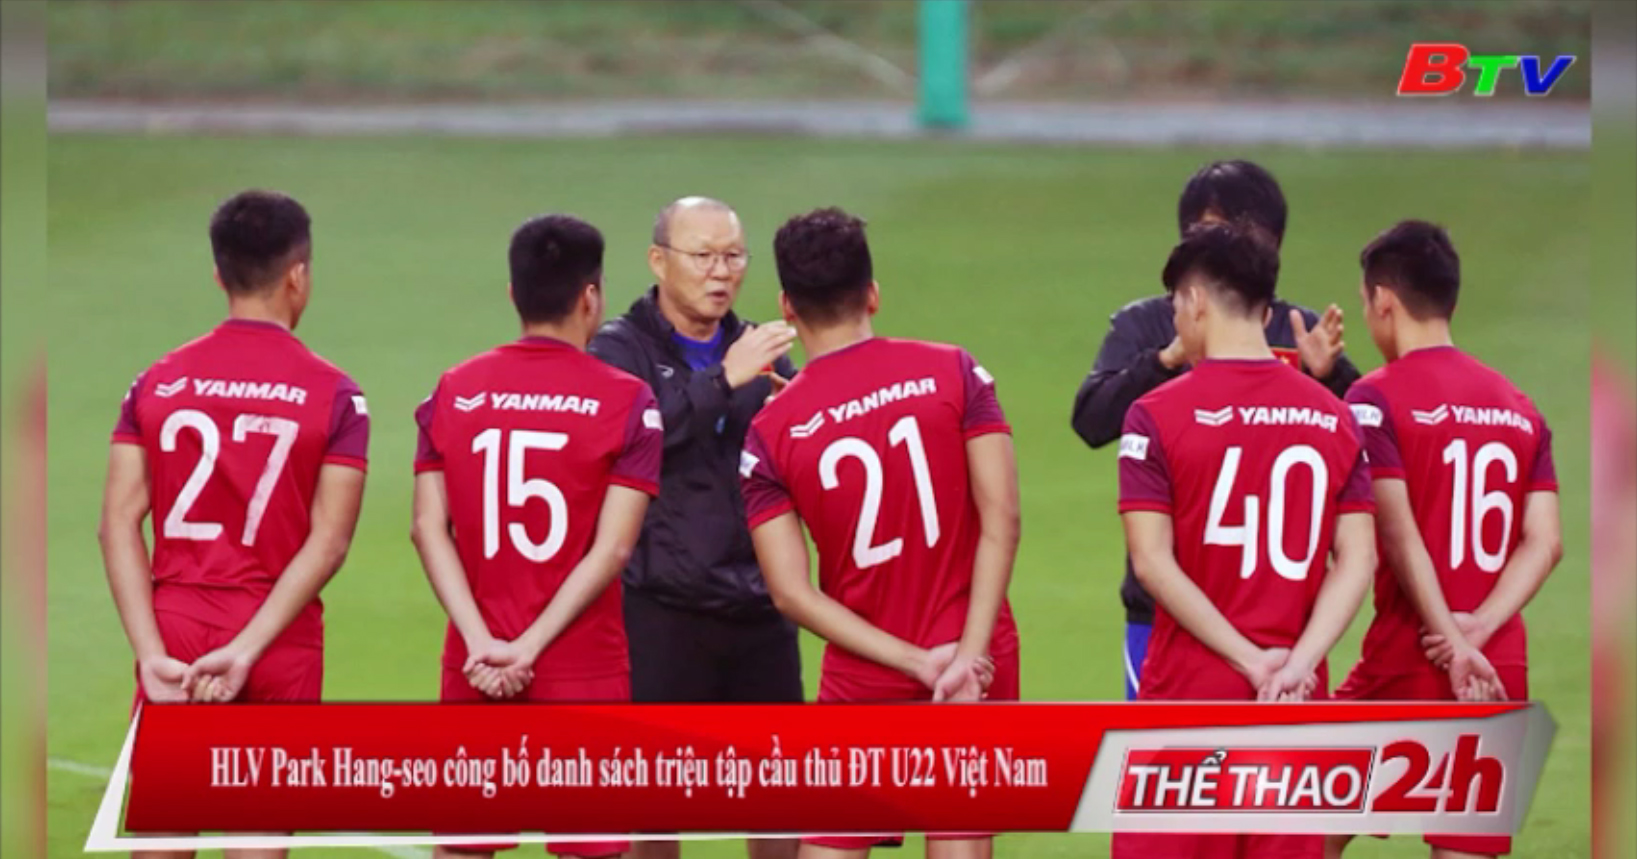 HLV Park Hang-seo công bố danh sách triệu tập cầu thủ ĐT U22 Việt Nam